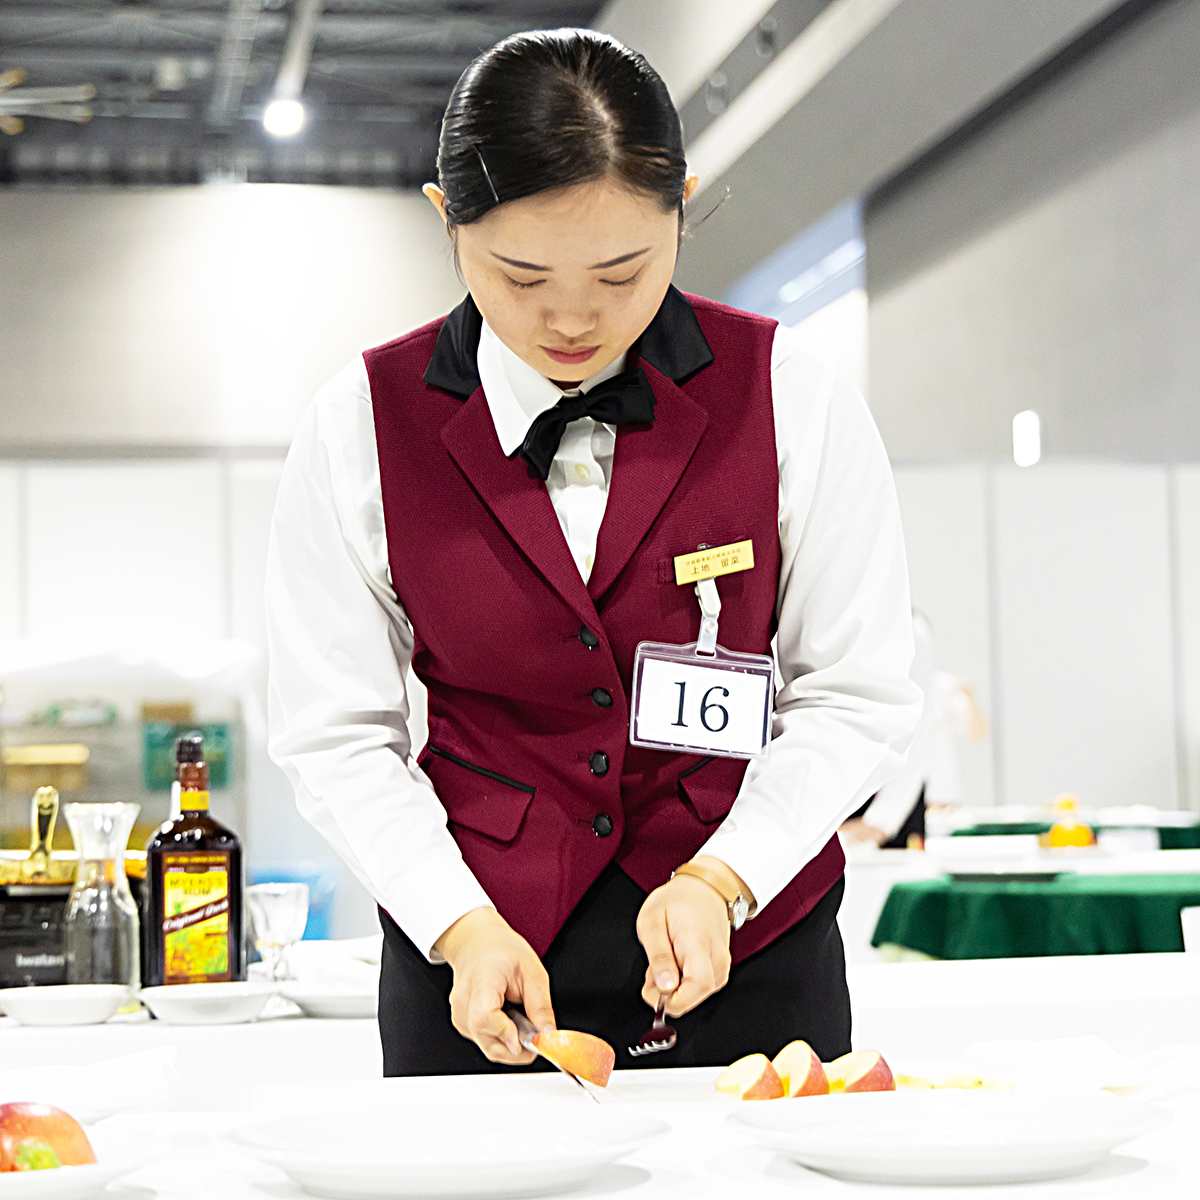 技能五輪全国大会「レストランサービス」職種！
ポイント①
レストランサービスは物を作る技術と豊富な知識でお客様に心地よい空間も同時に作り上げます
#WorldSkills #WorldSkillsJapan #技能五輪全国大会 #NationalSkills #レストランサービス #RestaurantService